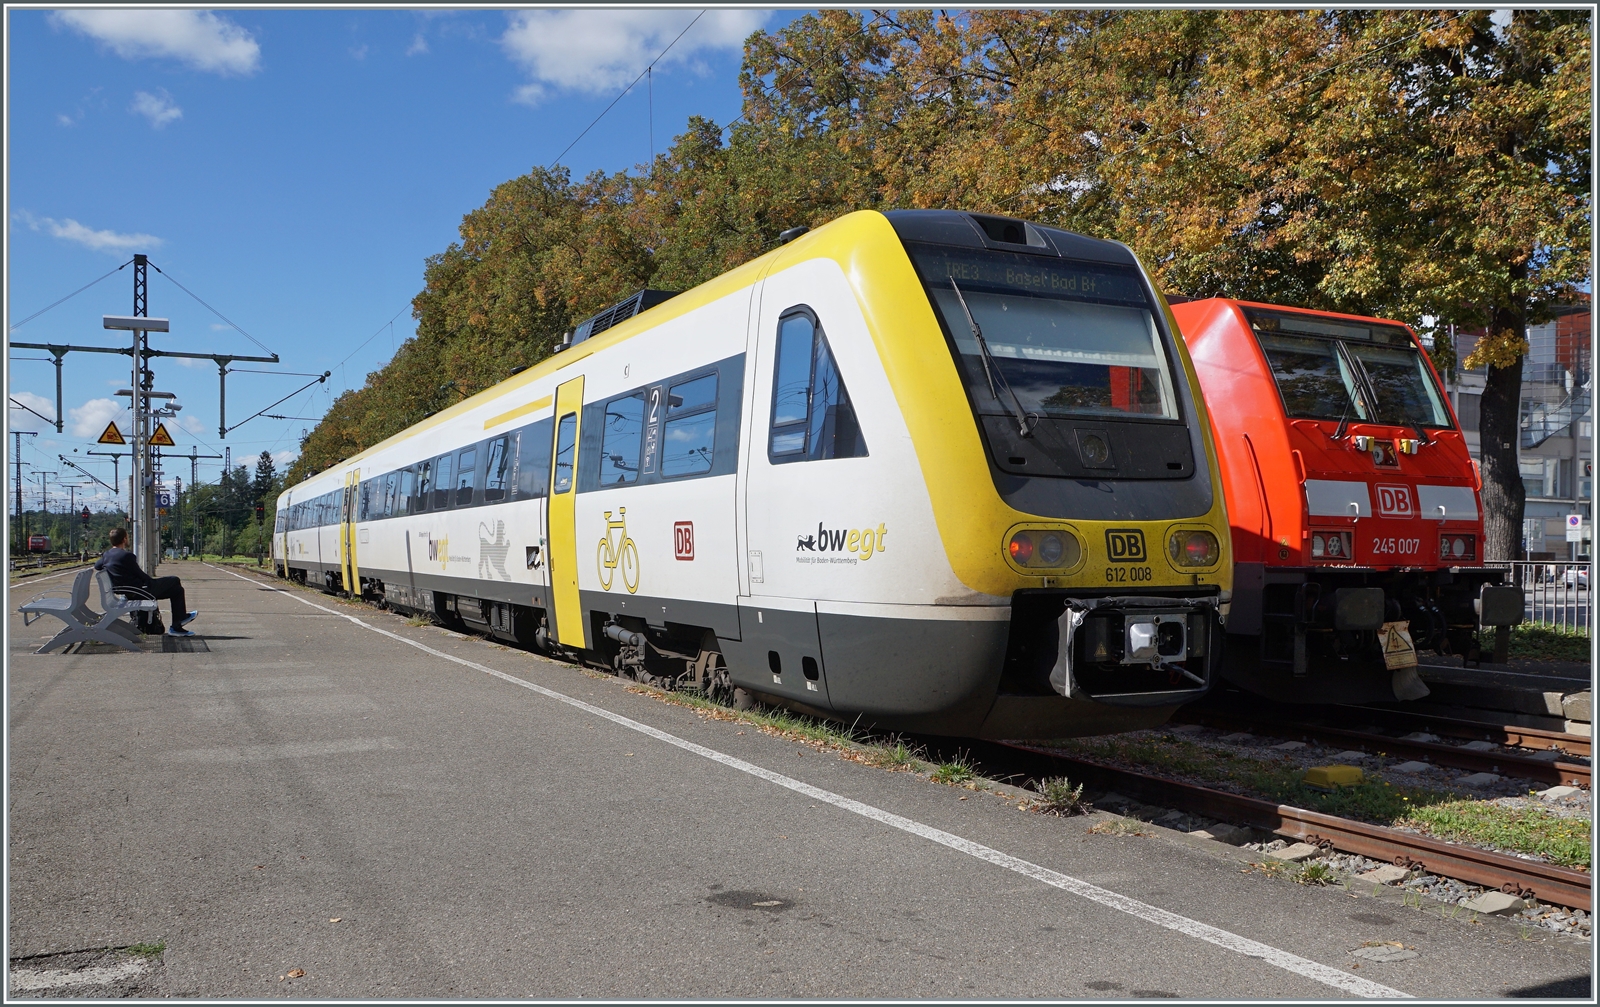 In Singen wartet der DB 612 008 auf die Abfahrt nach Basel Bad. Bf., rechts im Bild ist noch die Front der DB 245 007 zu erkennen.

6. Sept. 2022